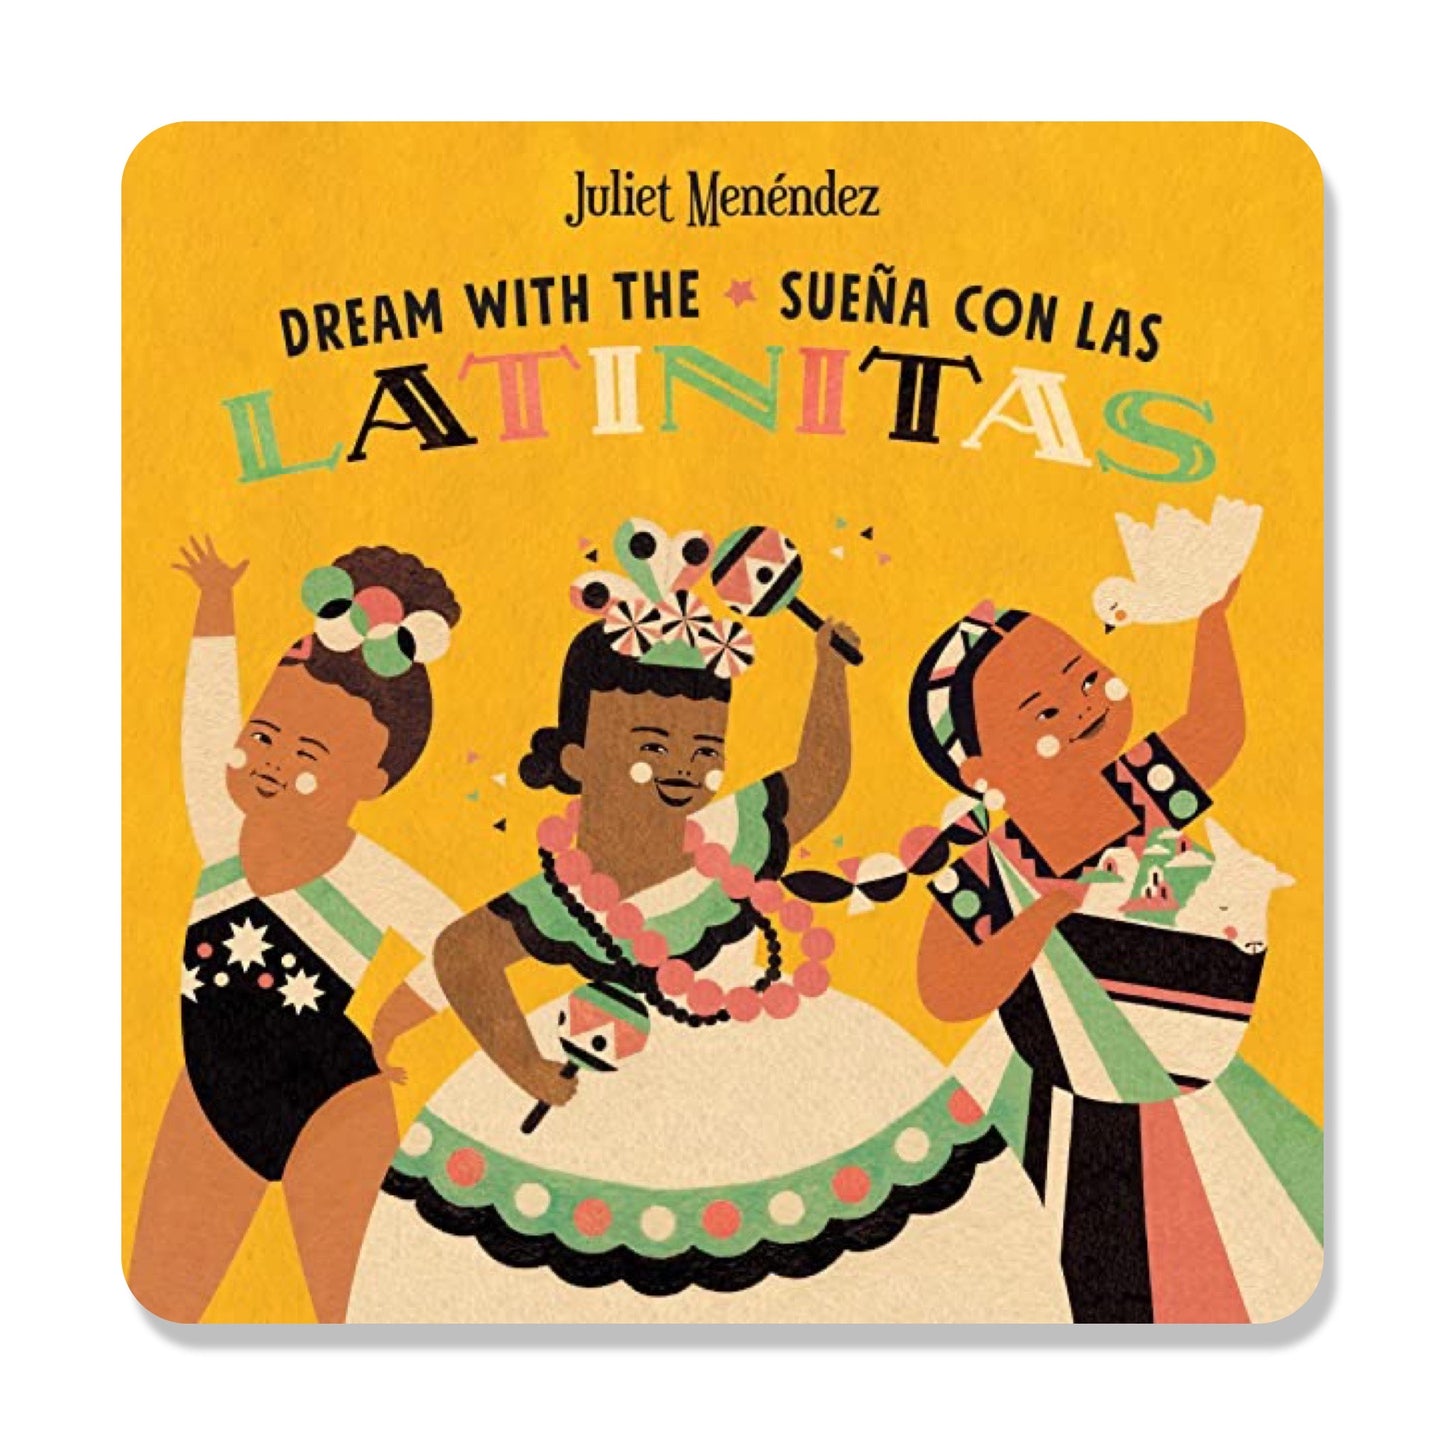 Dream with The/Sueña Con Las Latinitas